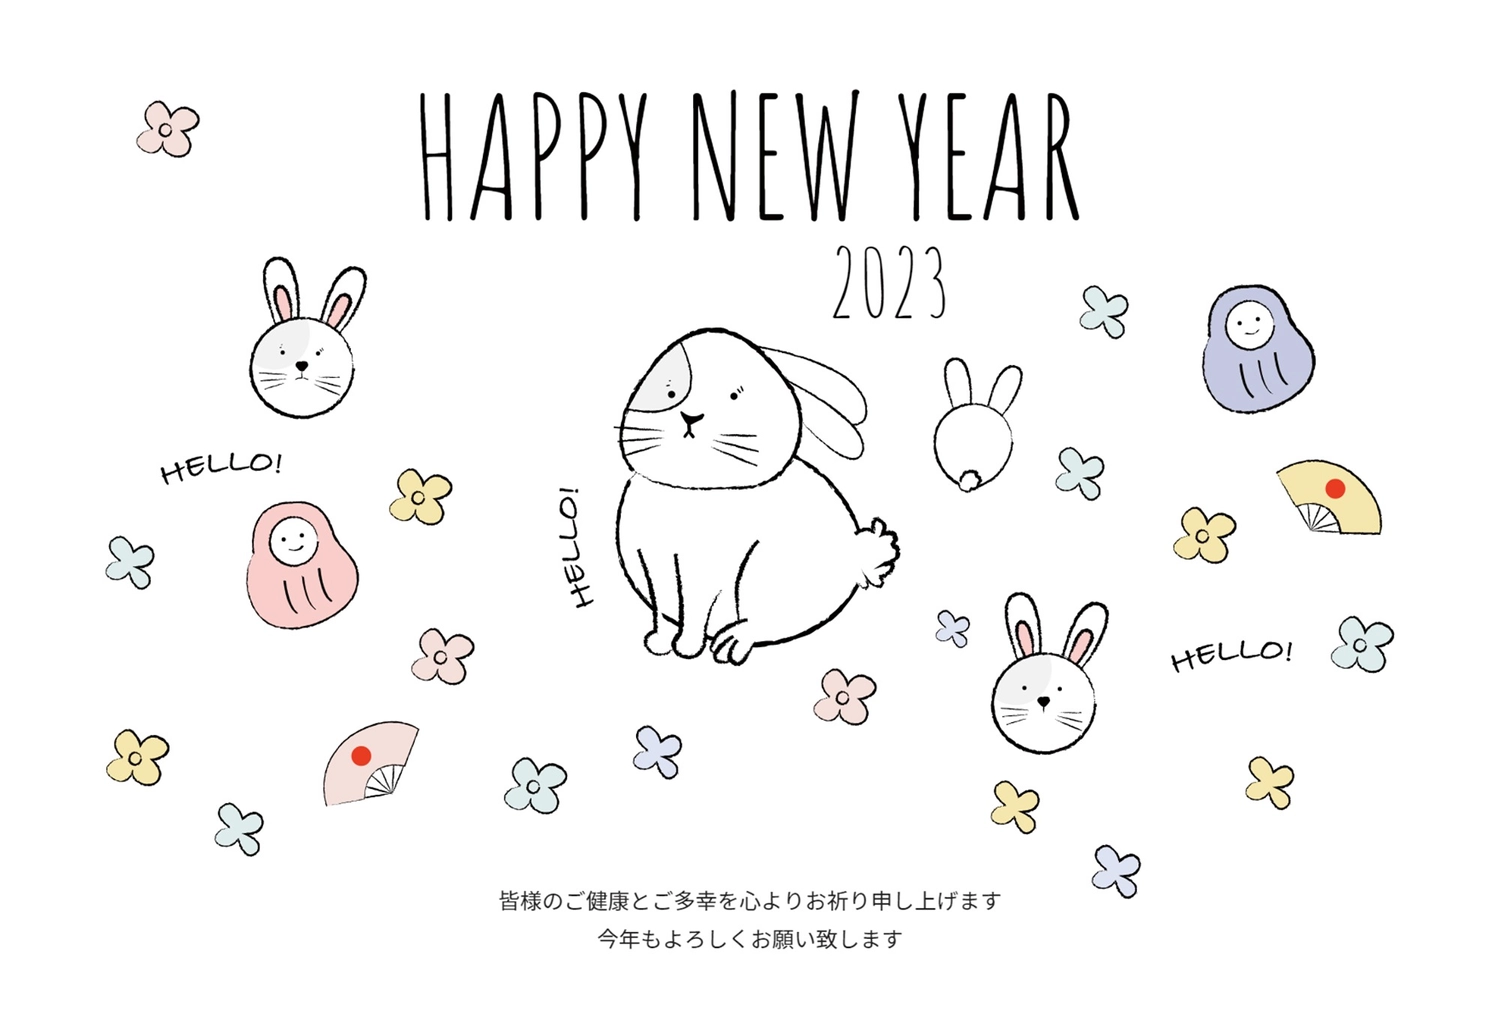 手描きうさぎイラストの年賀状, 새해, 令和, 흰 토끼, 새해 카드 템플릿